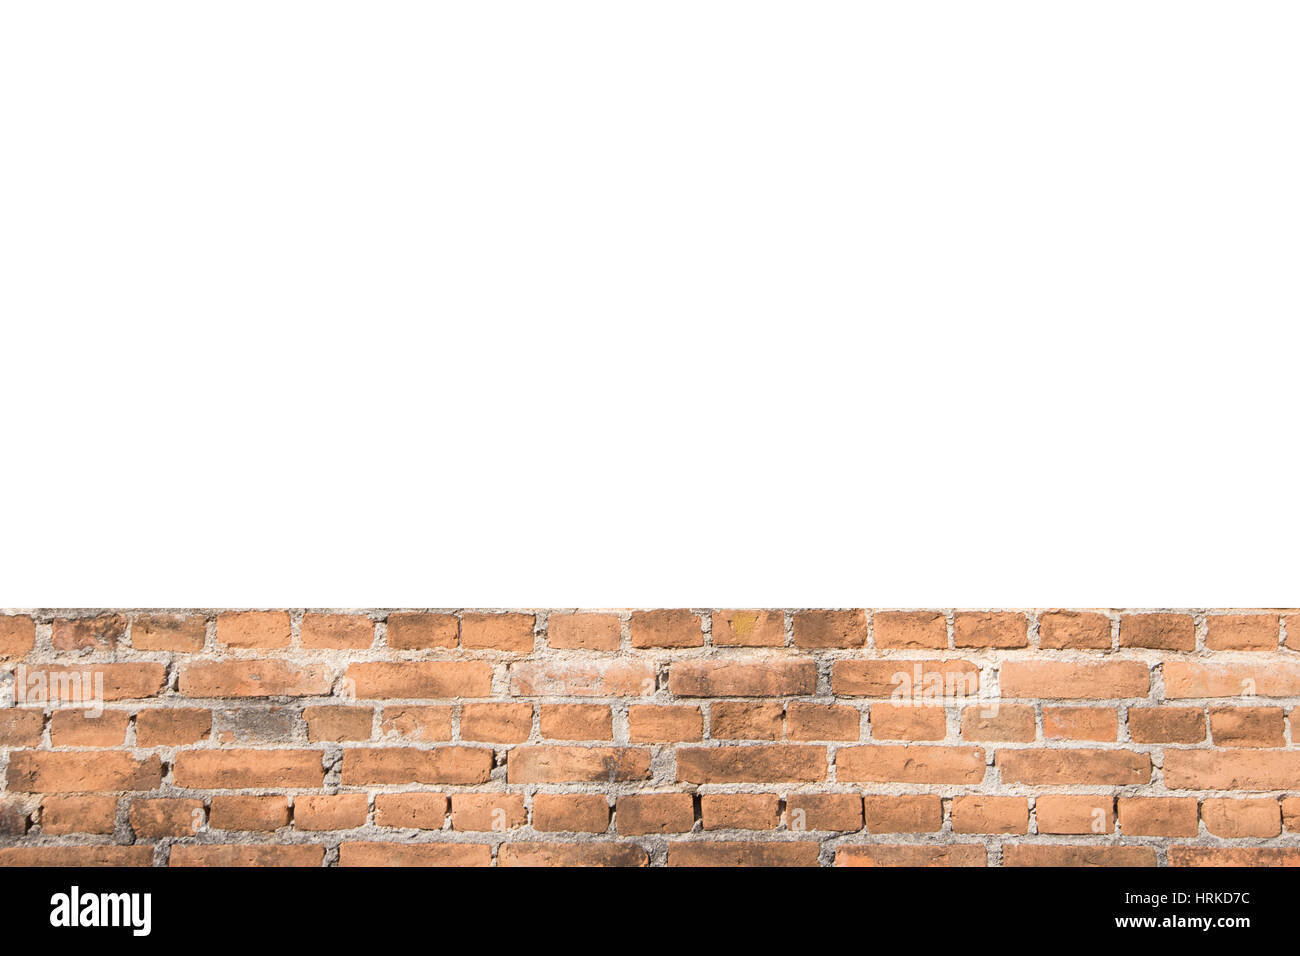 Leerstelle Ameise Muster der orange Olld Wand Bausteinstruktur Hintergrund Stockfoto